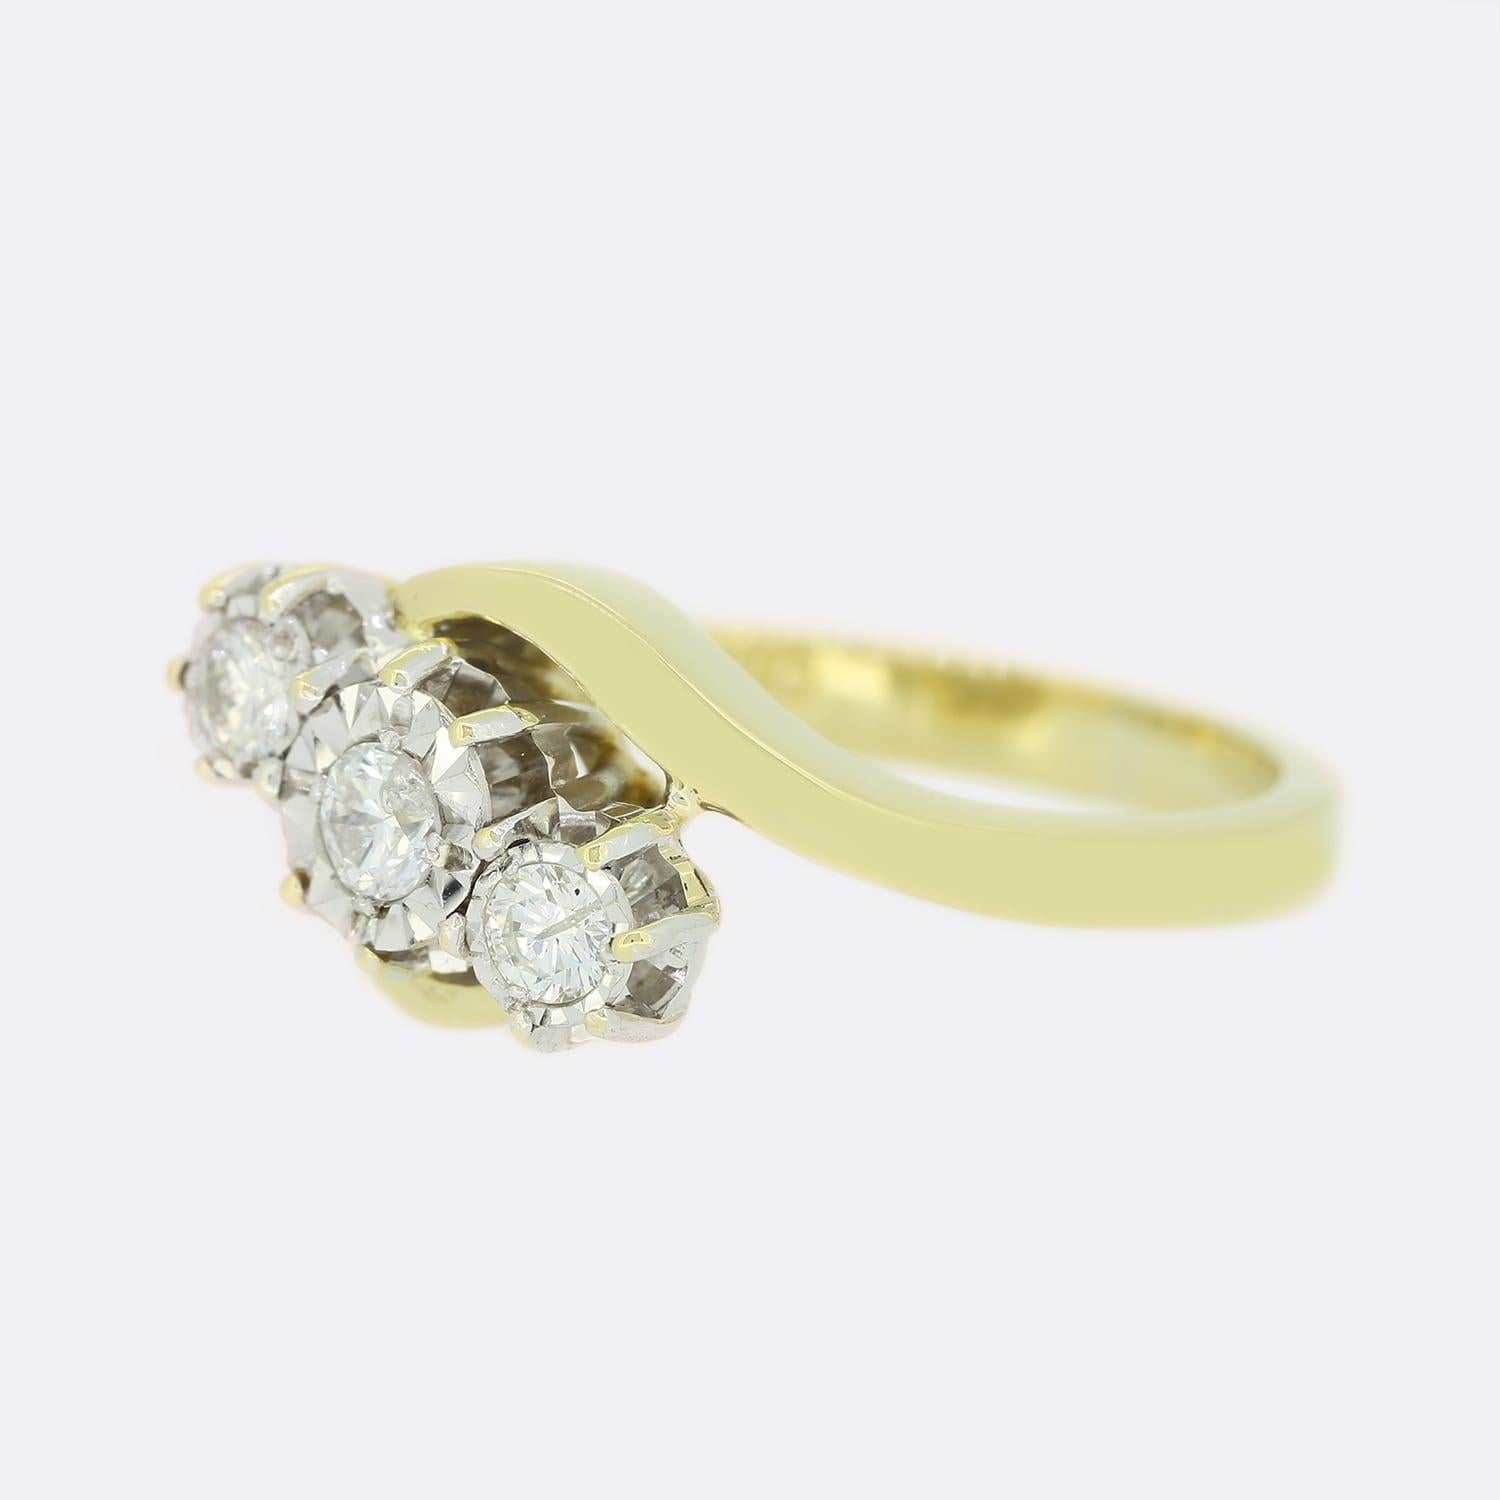 Dies ist ein 18ct Gelbgold Diamant Crossover Ring. Die 3 Diamanten sind illusionistisch in Weißgold gefasst, um sie etwas größer erscheinen zu lassen.

Zustand: Gebraucht (Sehr gut)
Gewicht: 4,9 Gramm
Größe: L 1/2
Karatgewicht der Diamanten